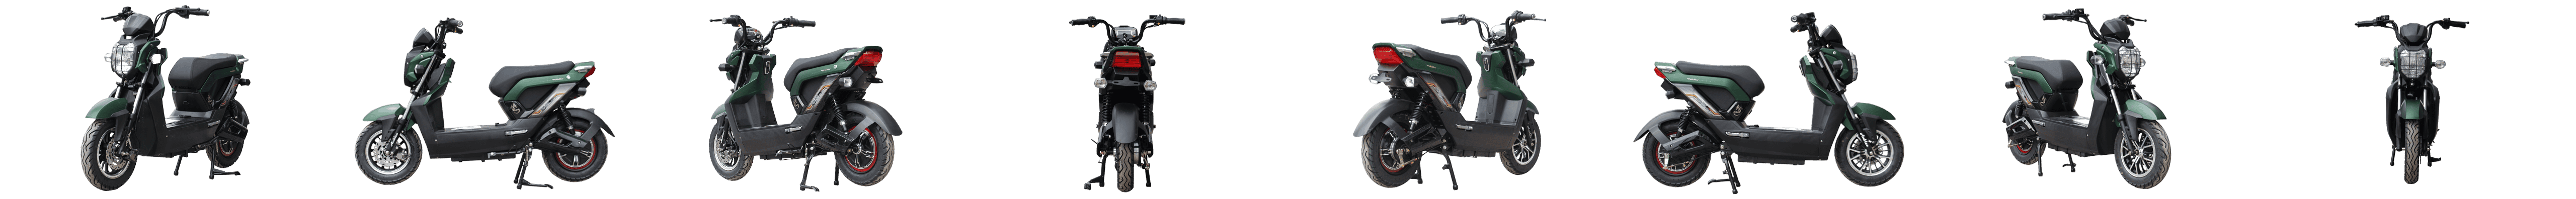 xe máy điện Zoomer 2017